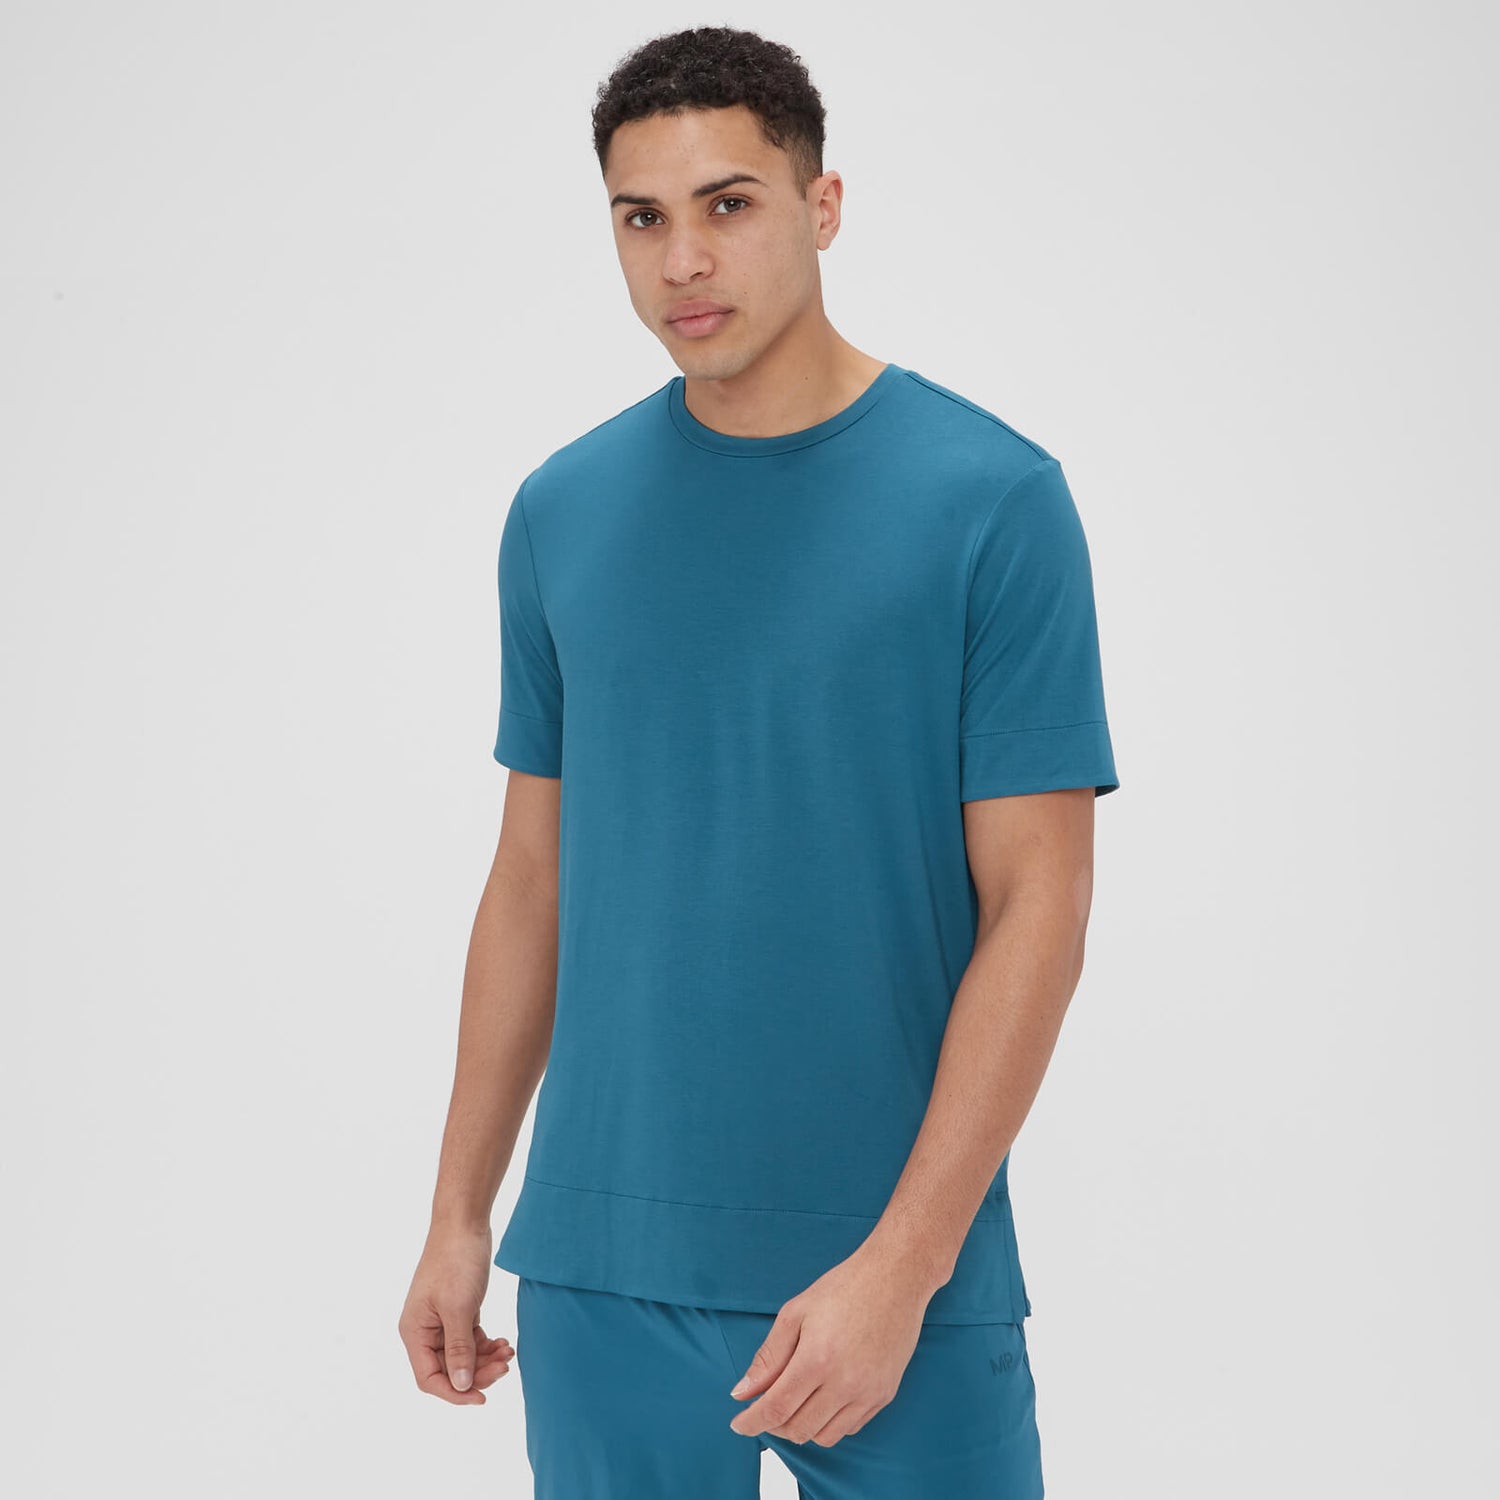 Camiseta de manga corta Composure para hombre de MP - Azul verde azulado - XS